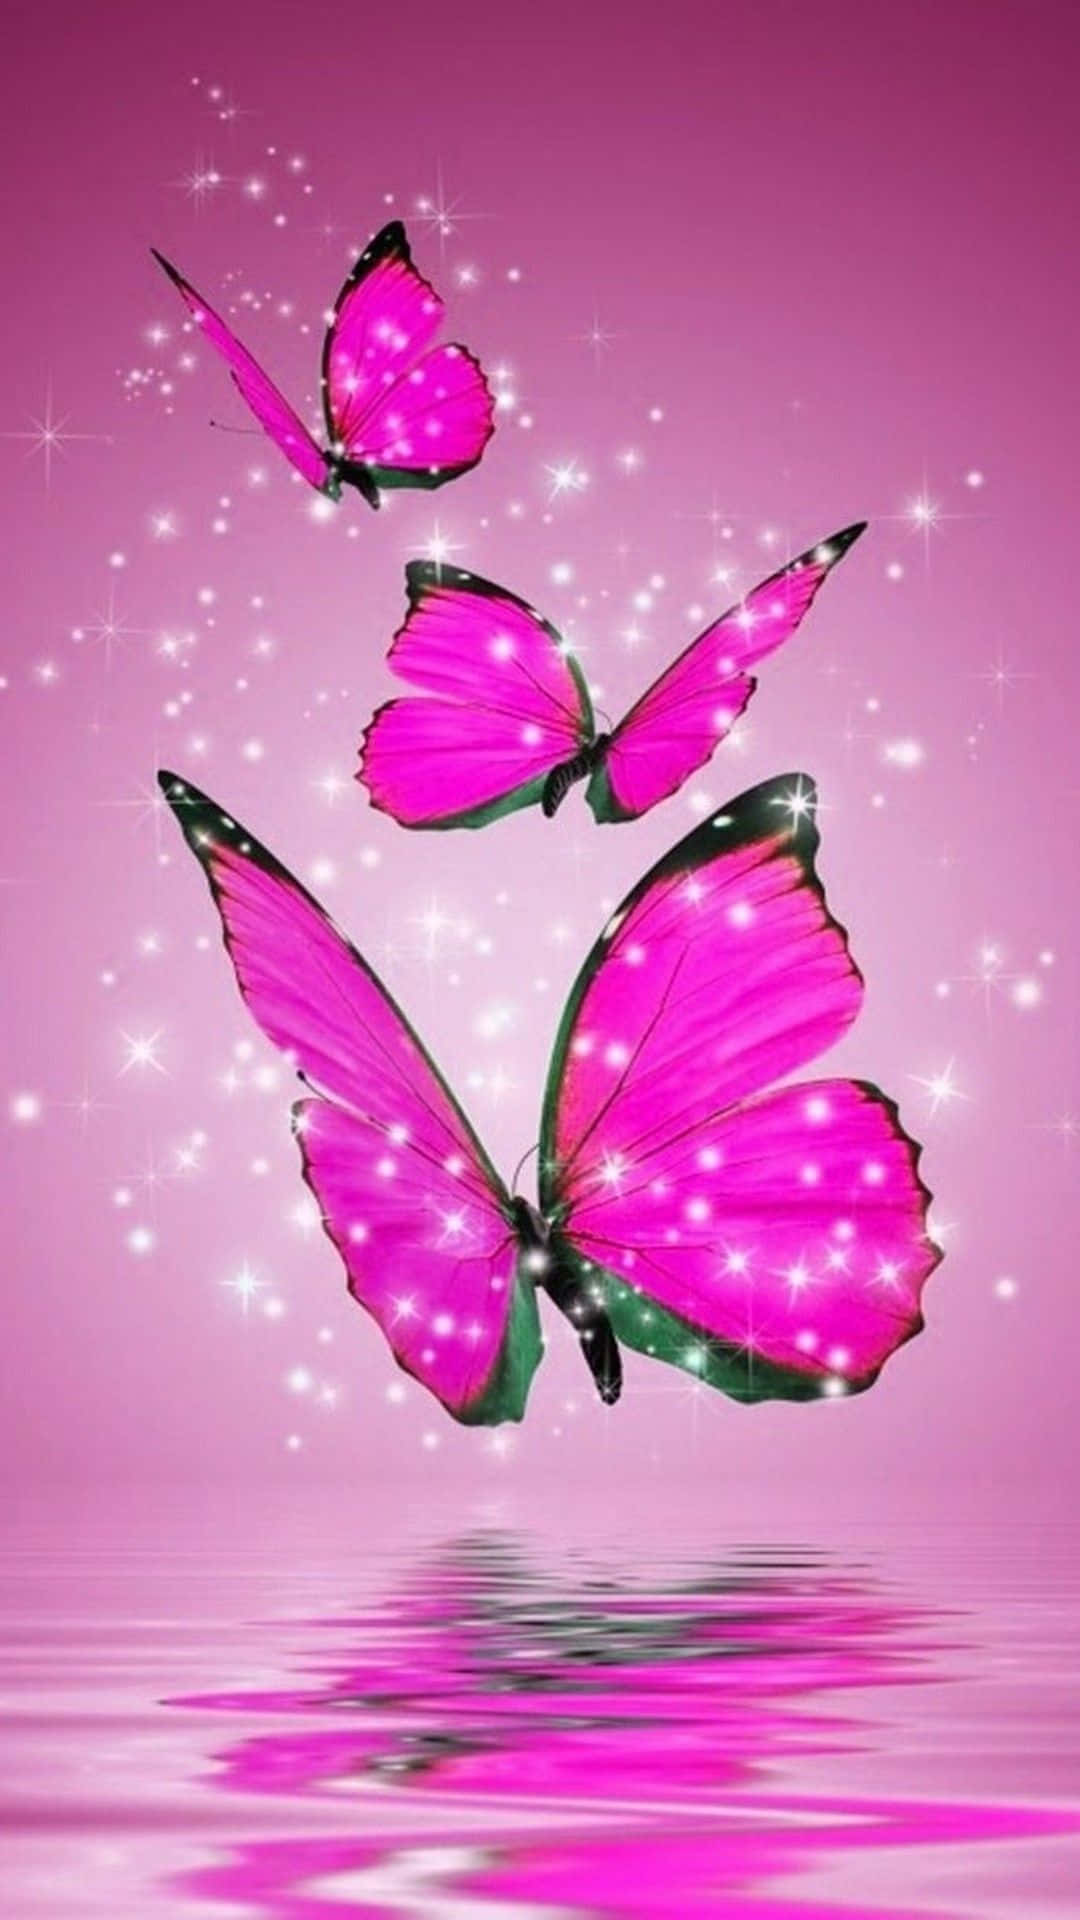 Einemagische Glitzernde Schmetterling Mit Exquisiten Flügeln Und Farben Wallpaper